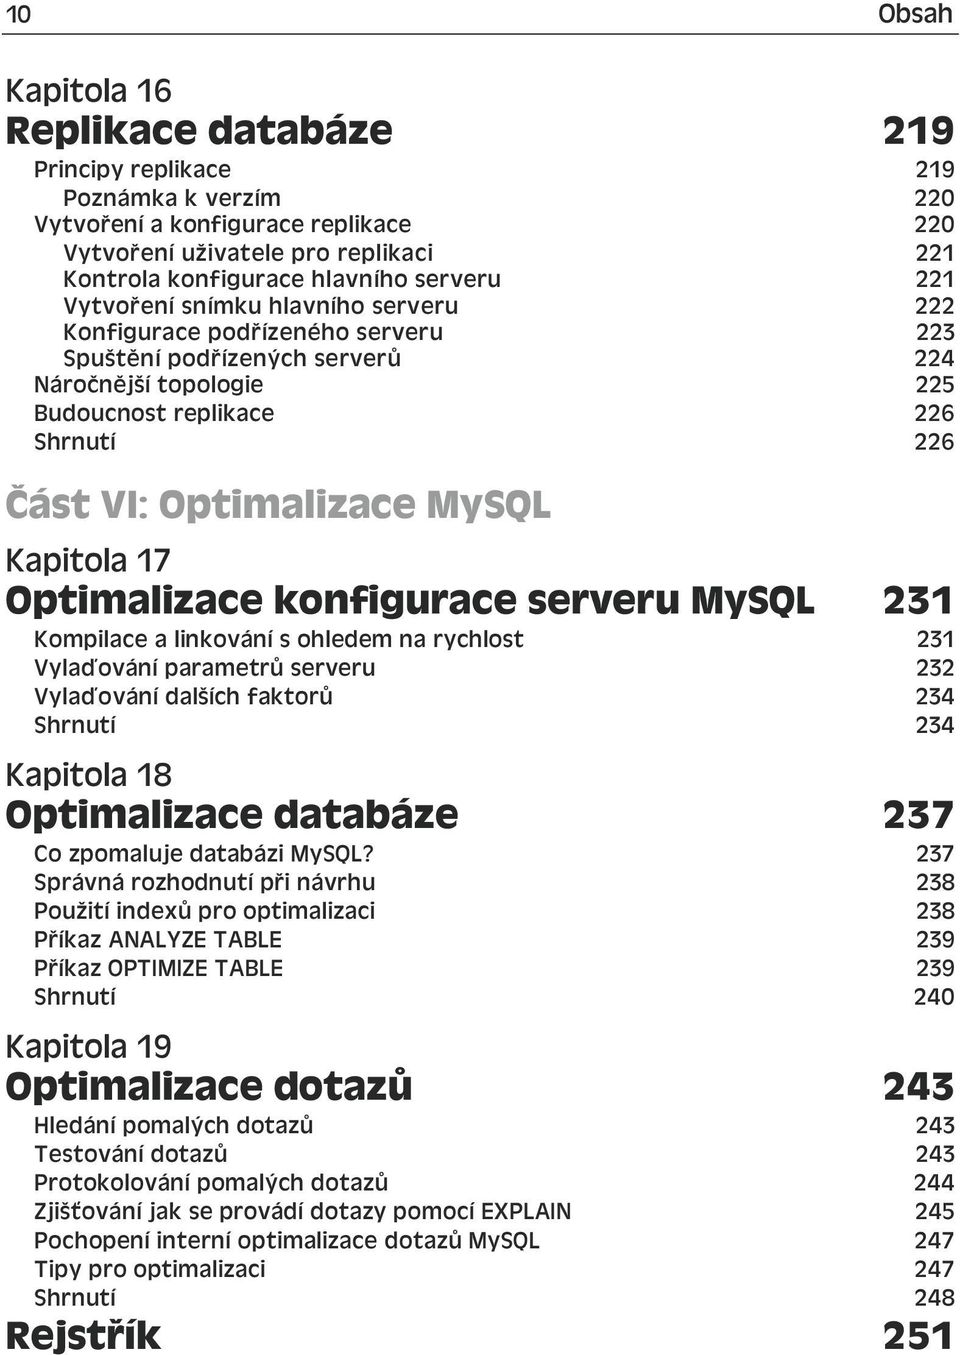 Optimalizace MySQL Kapitola 17 Optimalizace konfigurace serveru MySQL 231 Kompilace a linkování s ohledem na rychlost 231 Vylaďování parametrů serveru 232 Vylaďování dalších faktorů 234 Shrnutí 234